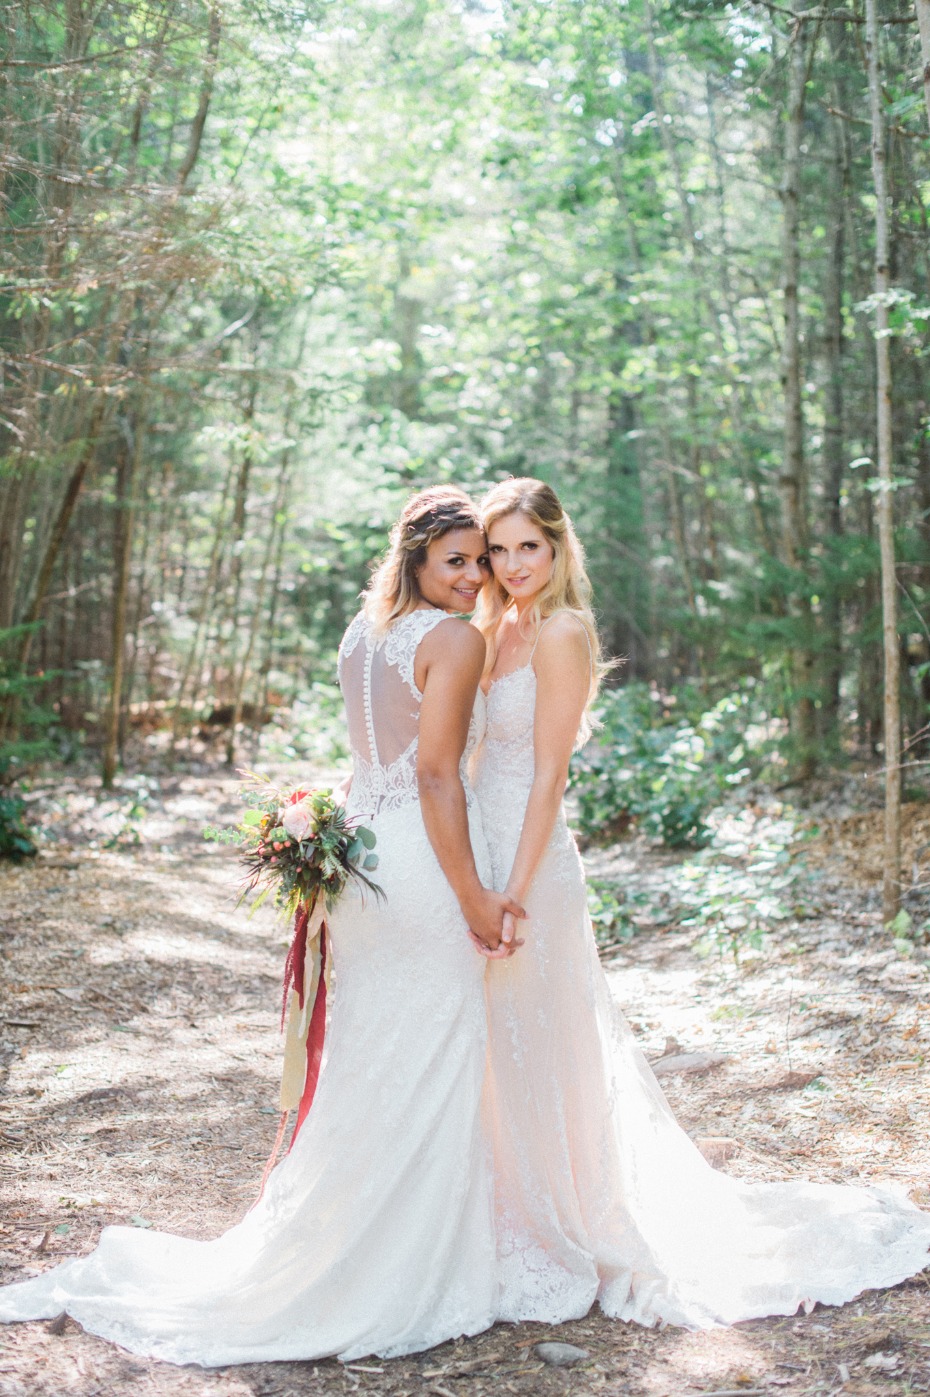 Wild woodsy same-sex wedding ideas